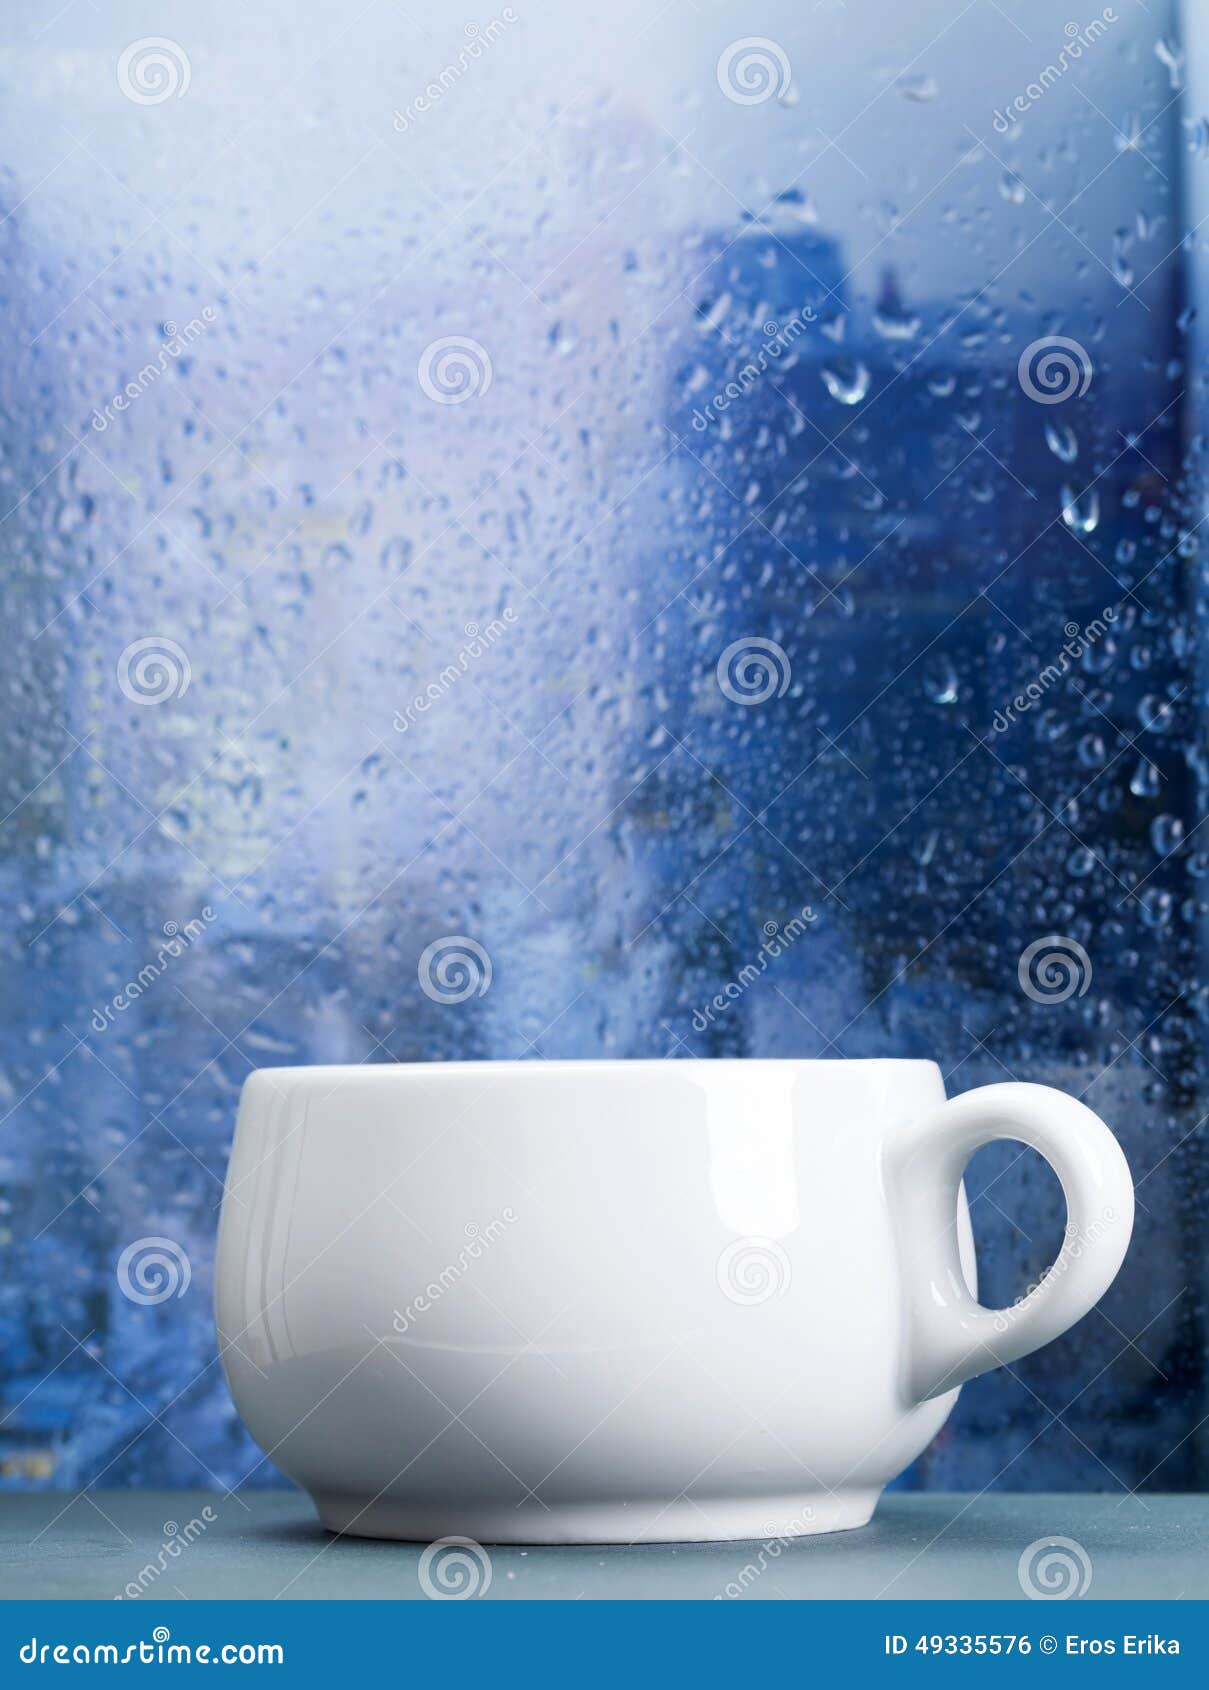 一個下雨的晨早 聴著下雨的夜晚 看著咖啡想著一個人 徘徊著回憶著甜與苦的—刻 2016願快樂與你常在 ☔🐷😌💭… | Flickr